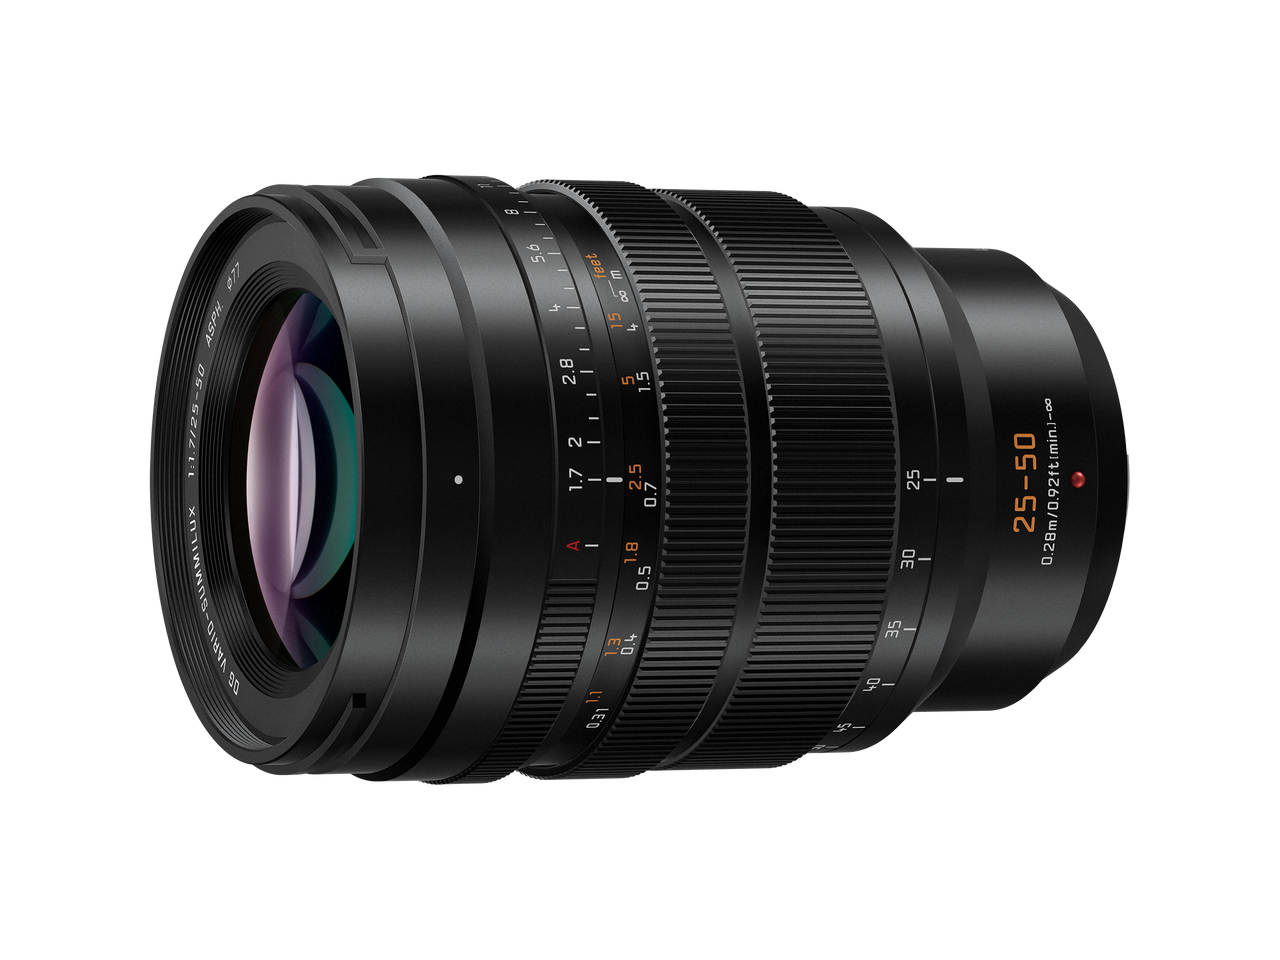 LEICA DG VARIO-SUMMILUX 25-50mm / F1.7 ASPH. | Find a Lens | Micro 